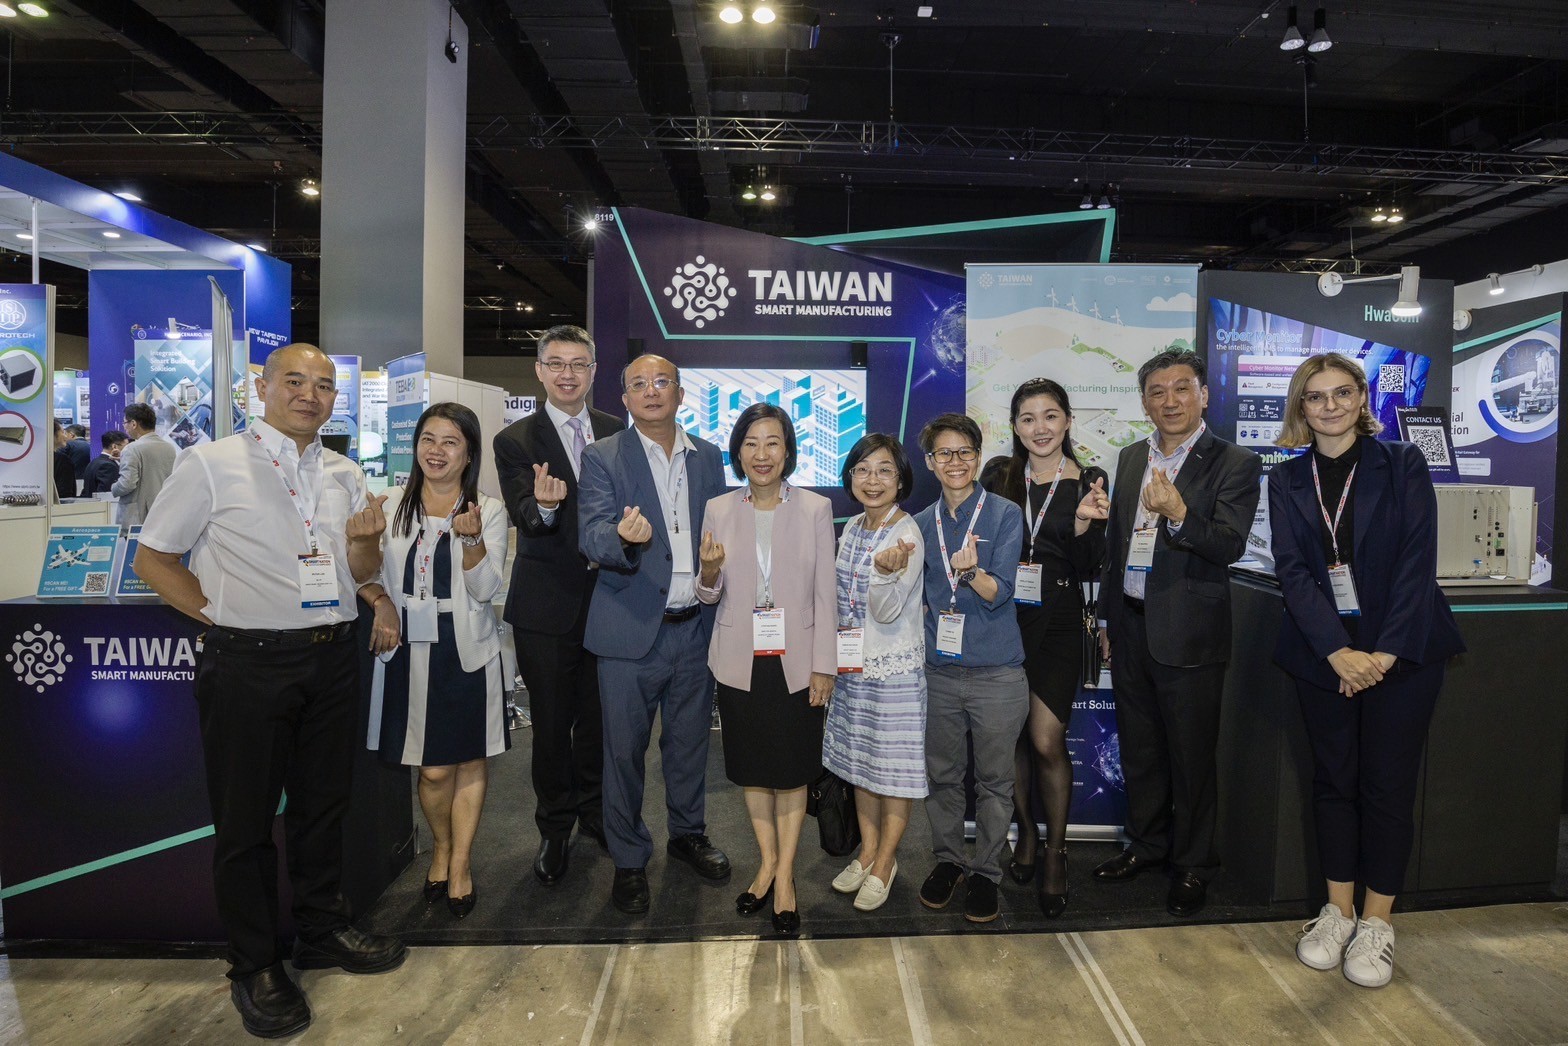 貿易局局長江文若率團參加馬來西亞國家智慧展，推動雙方產業合作與交流，協助廠商爭取智慧應用領域商機